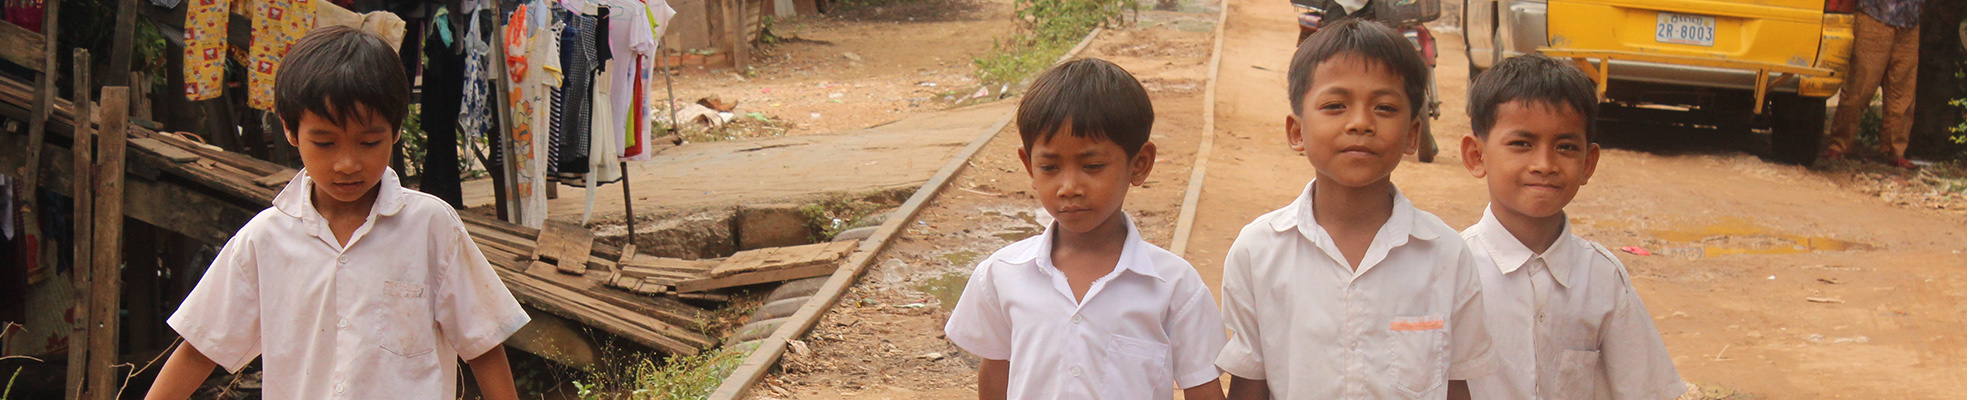 Enfants cambodgien du bidonville de Boeng Salang